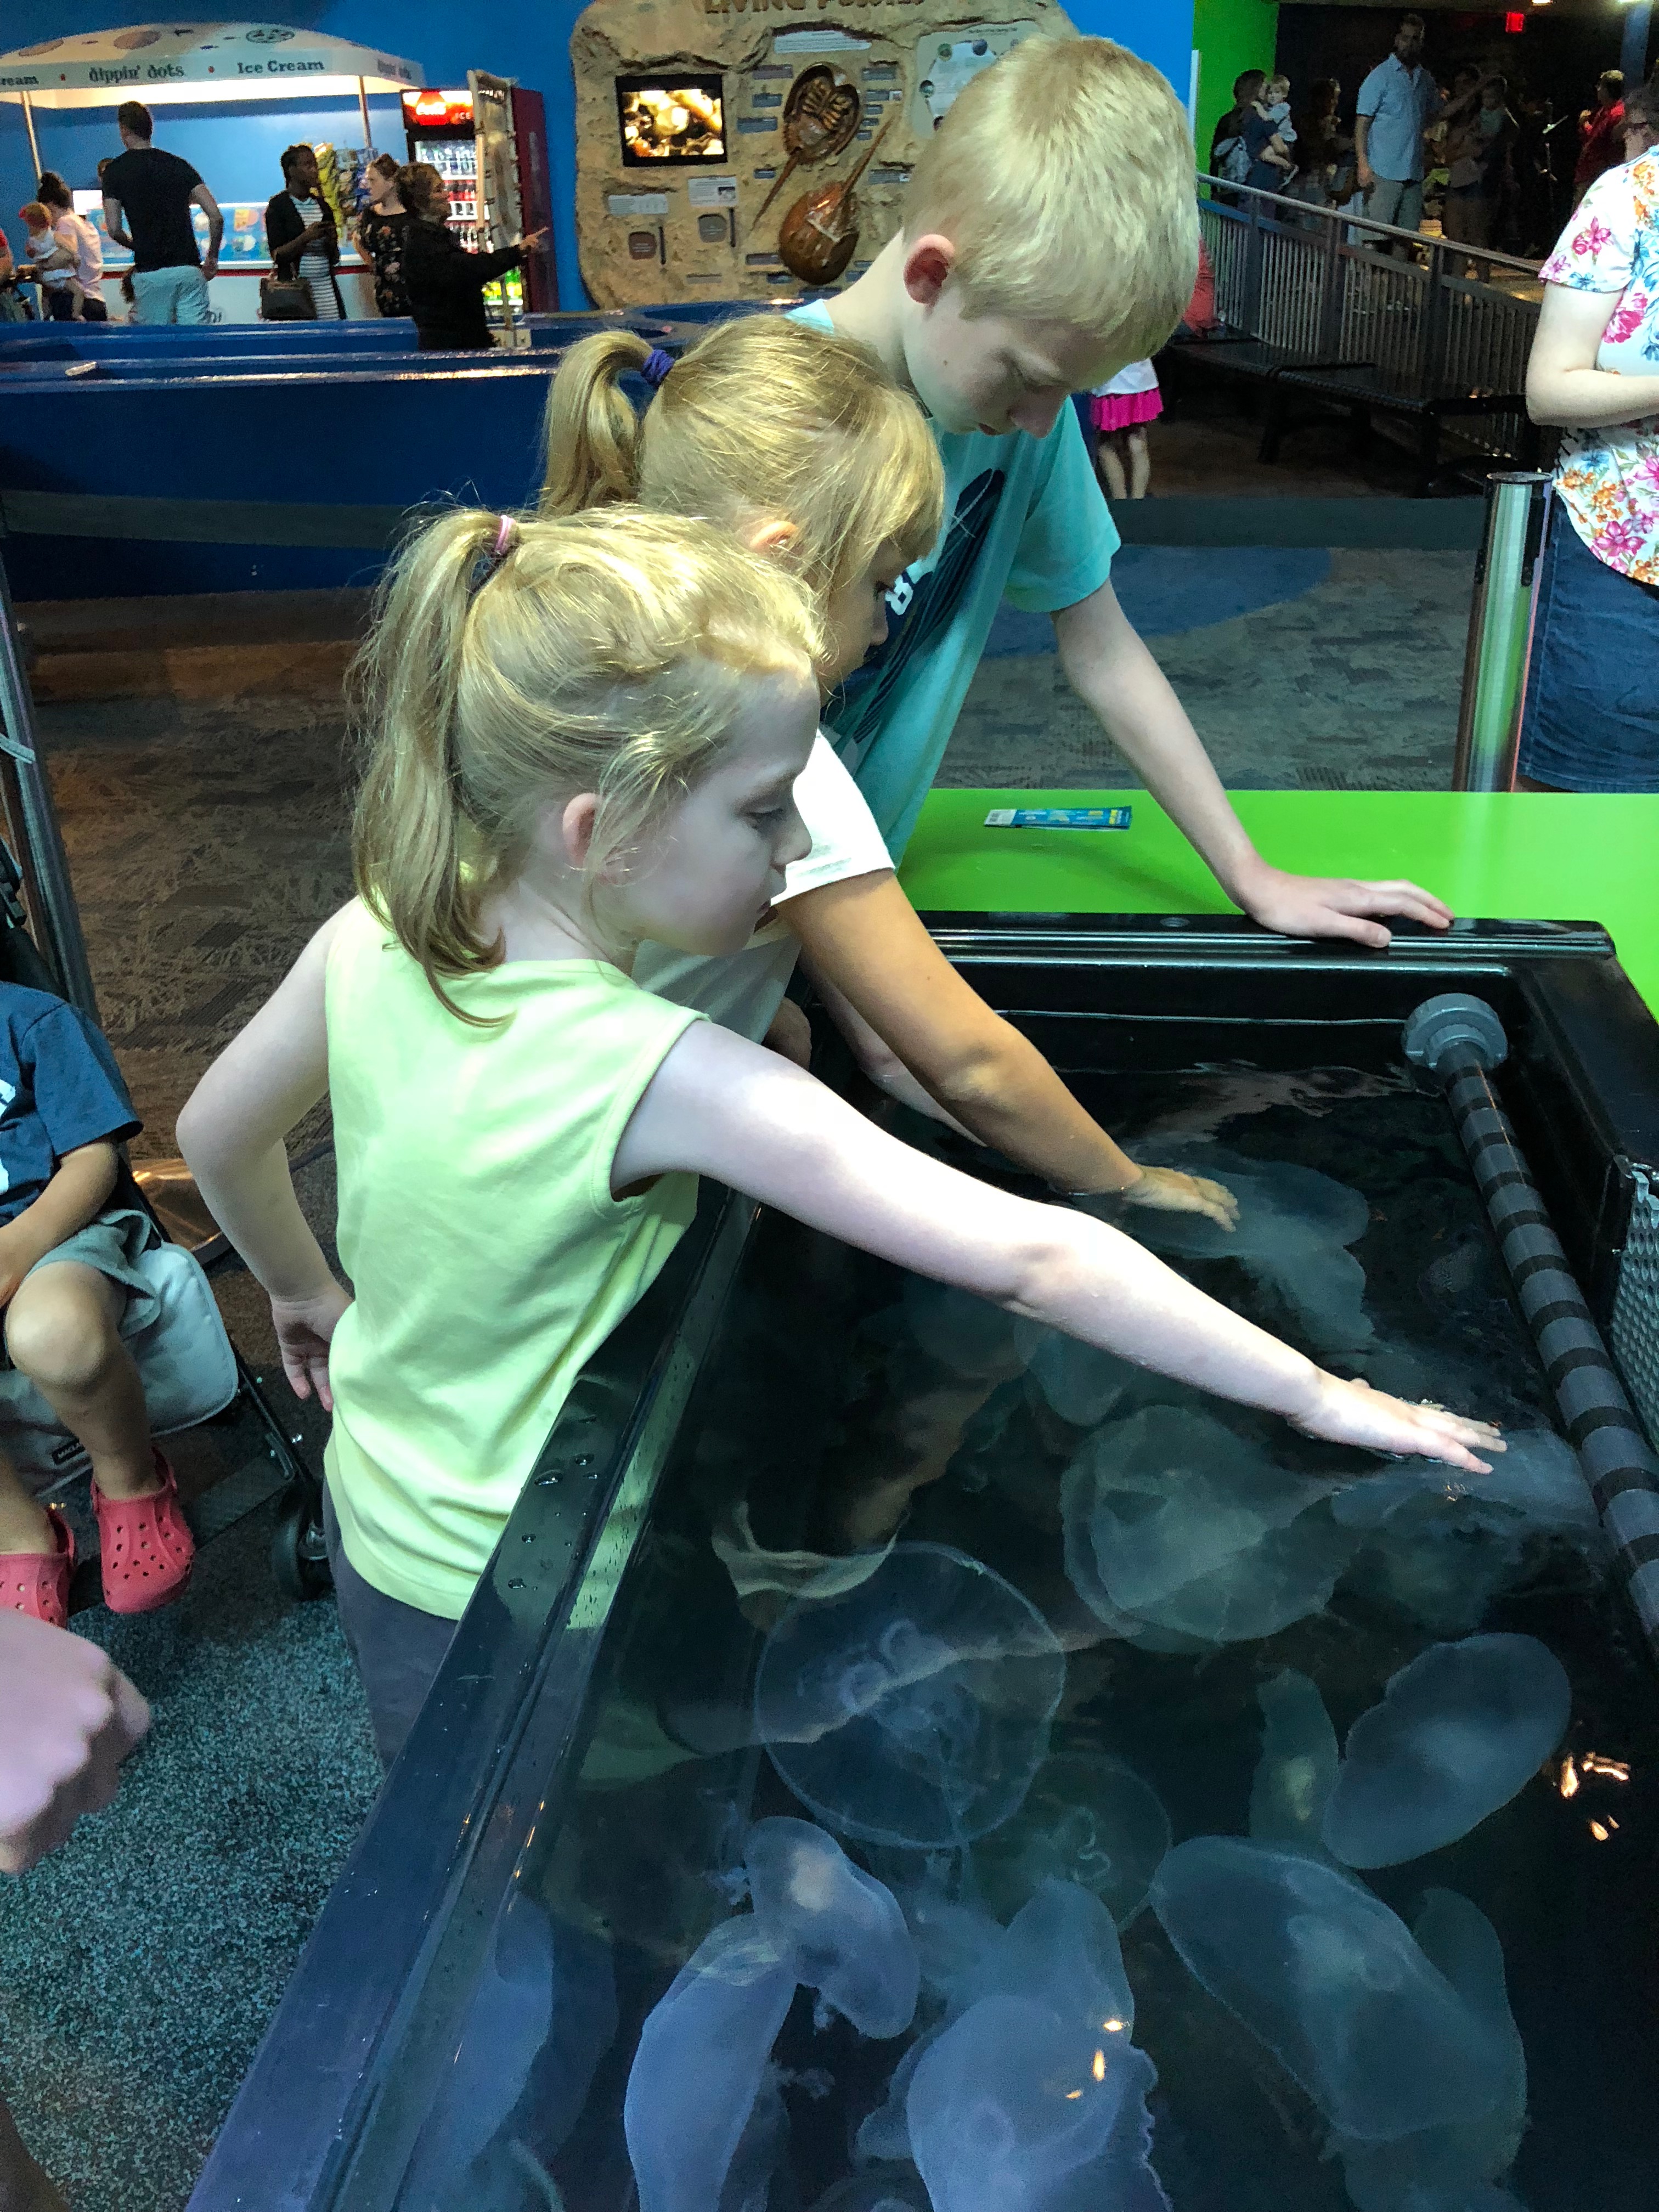 Touch a jellyfish - Ripley's Aquarium in Gatlinburg, TN